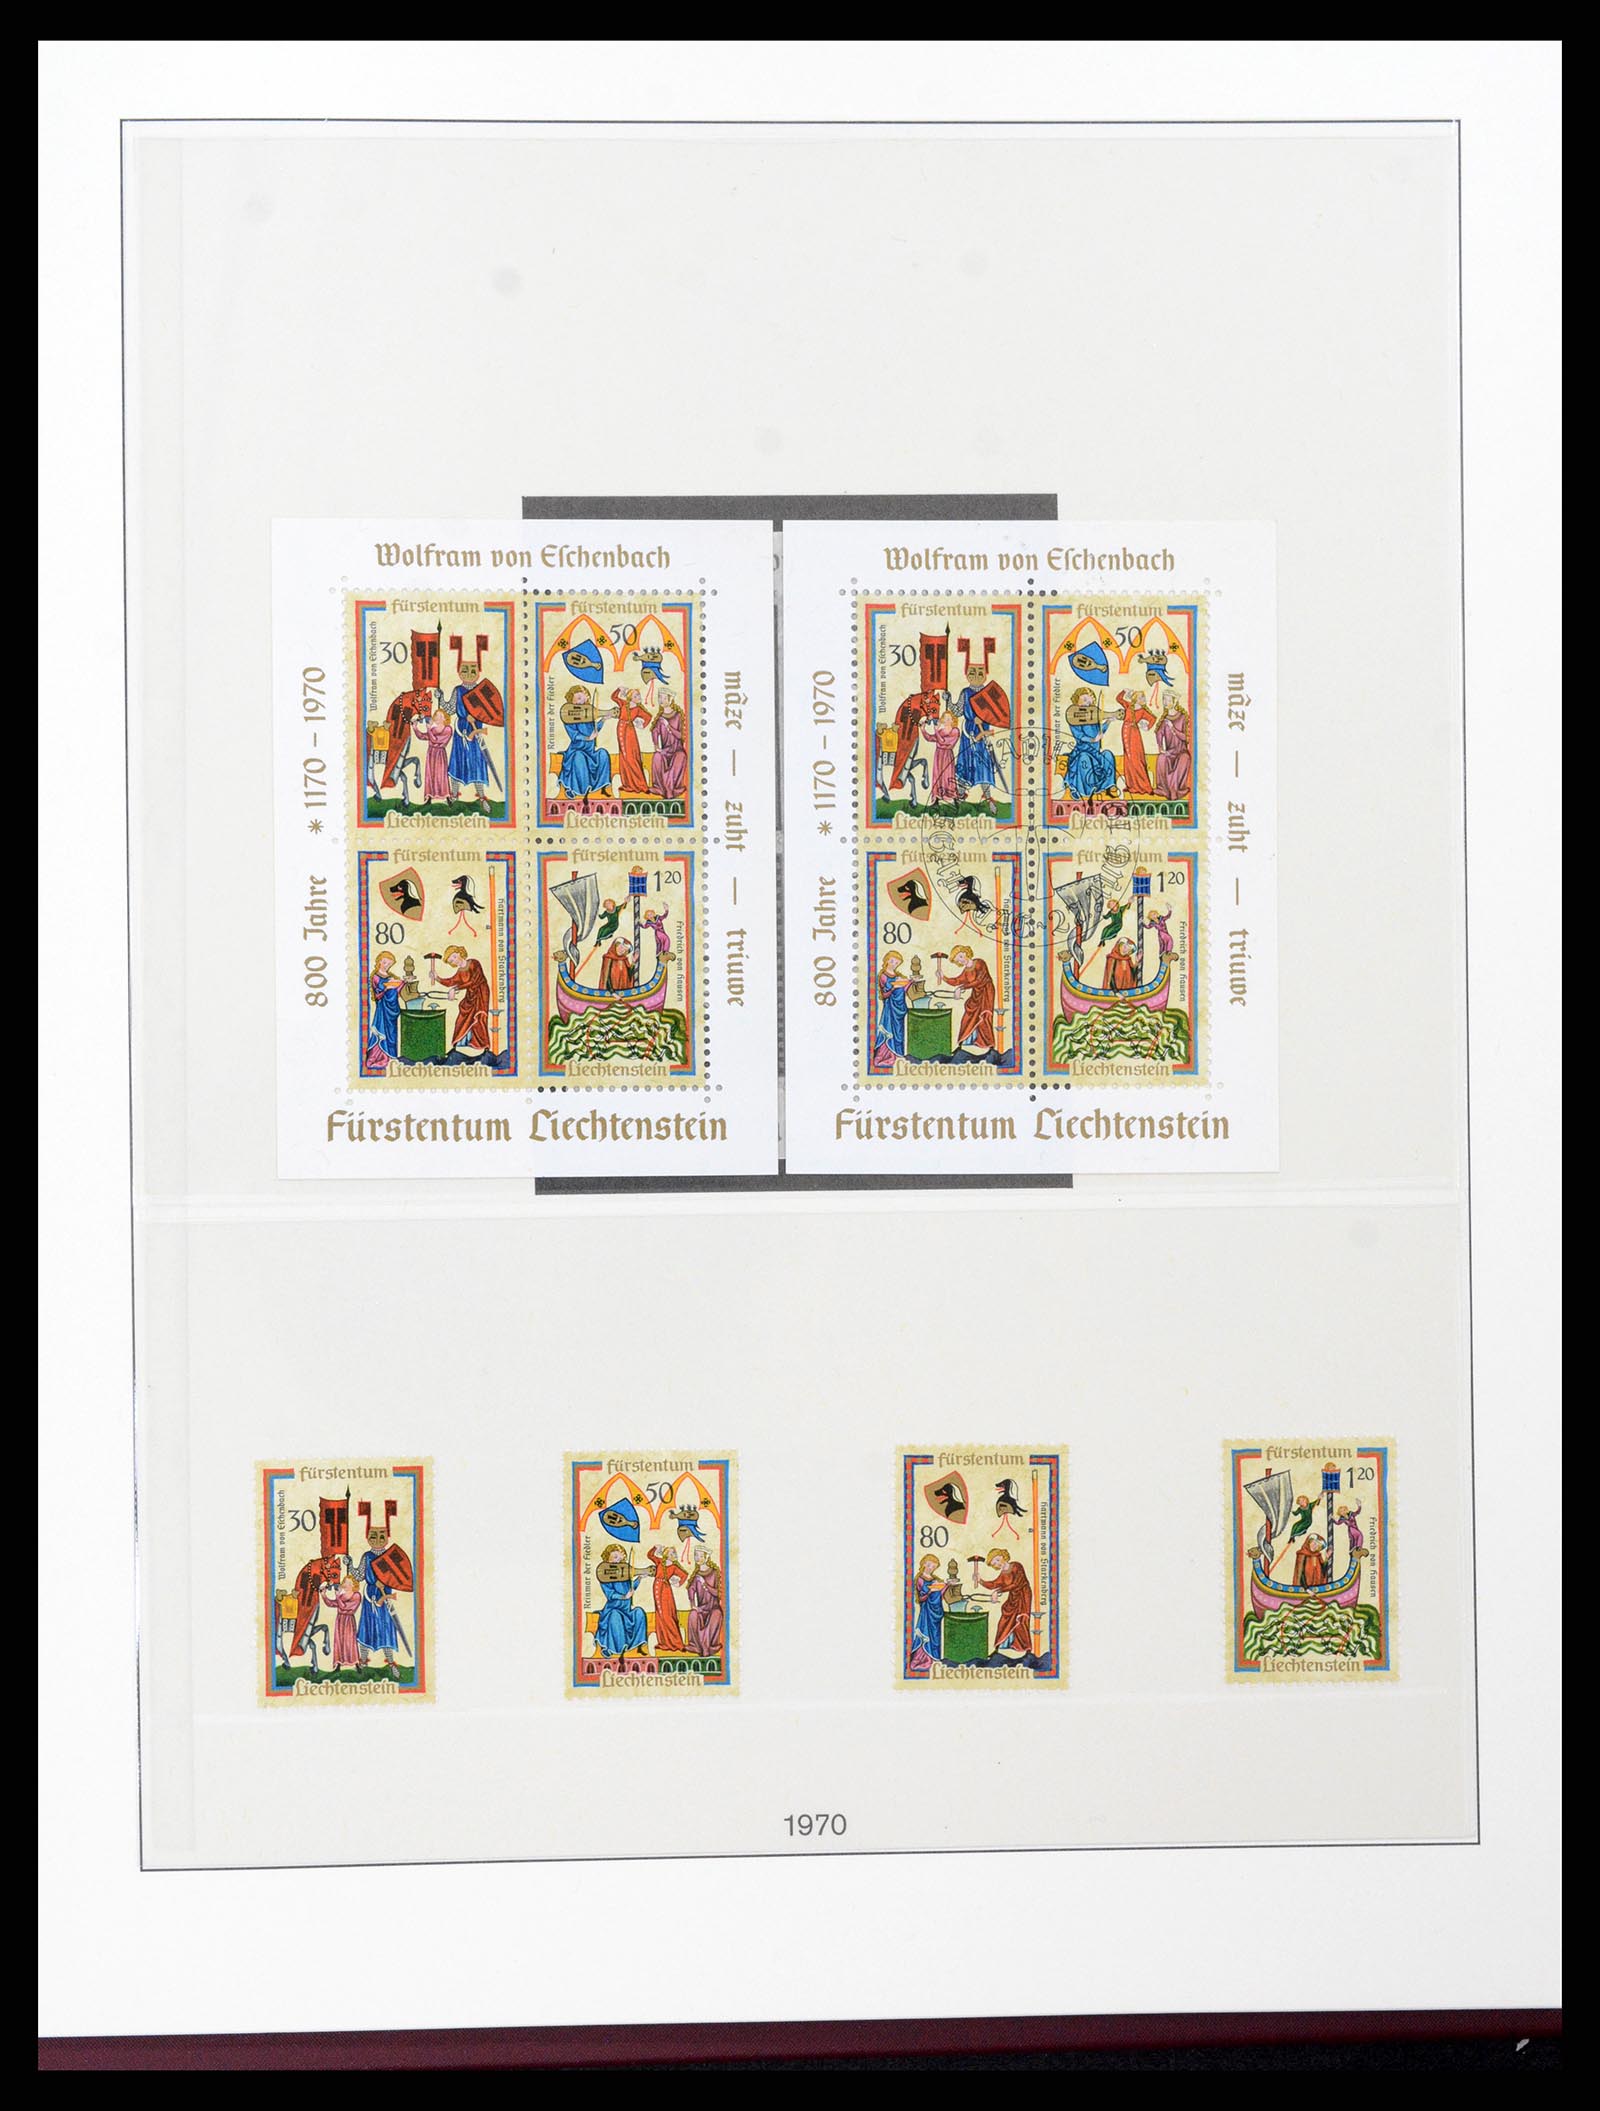 37293 048 - Stamp collection 37293 Liechtenstein 1912-2003.